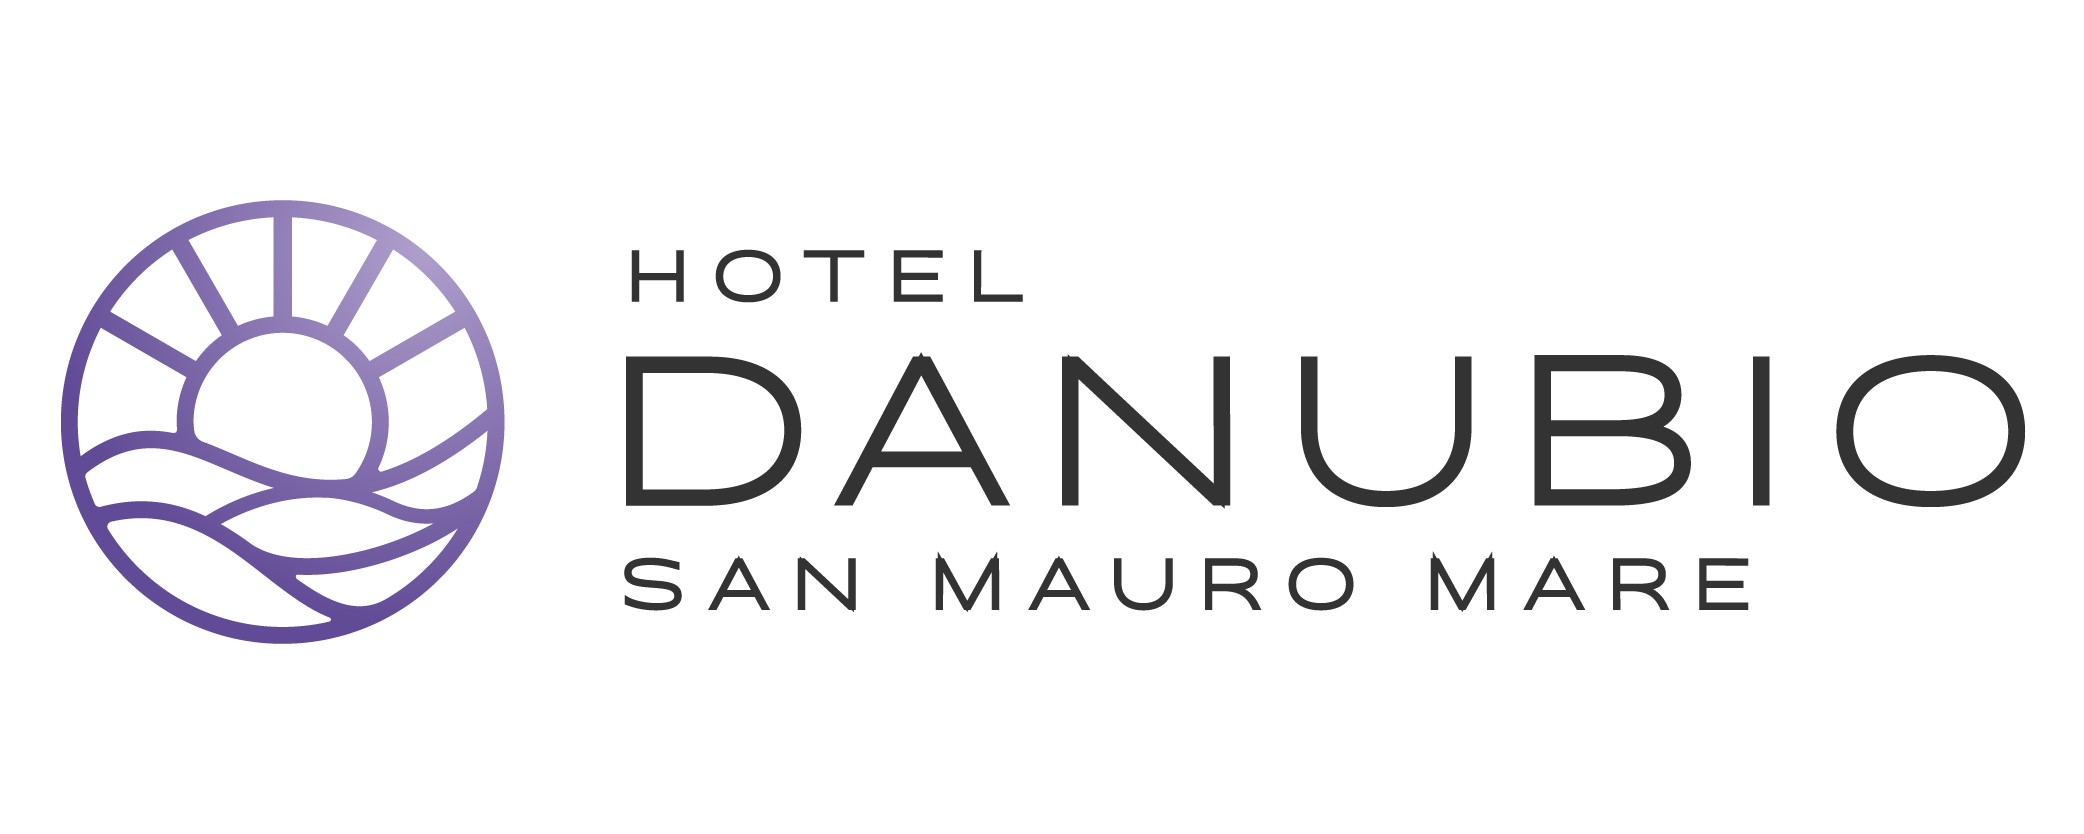 Hotel Danubio San Mauro Mare